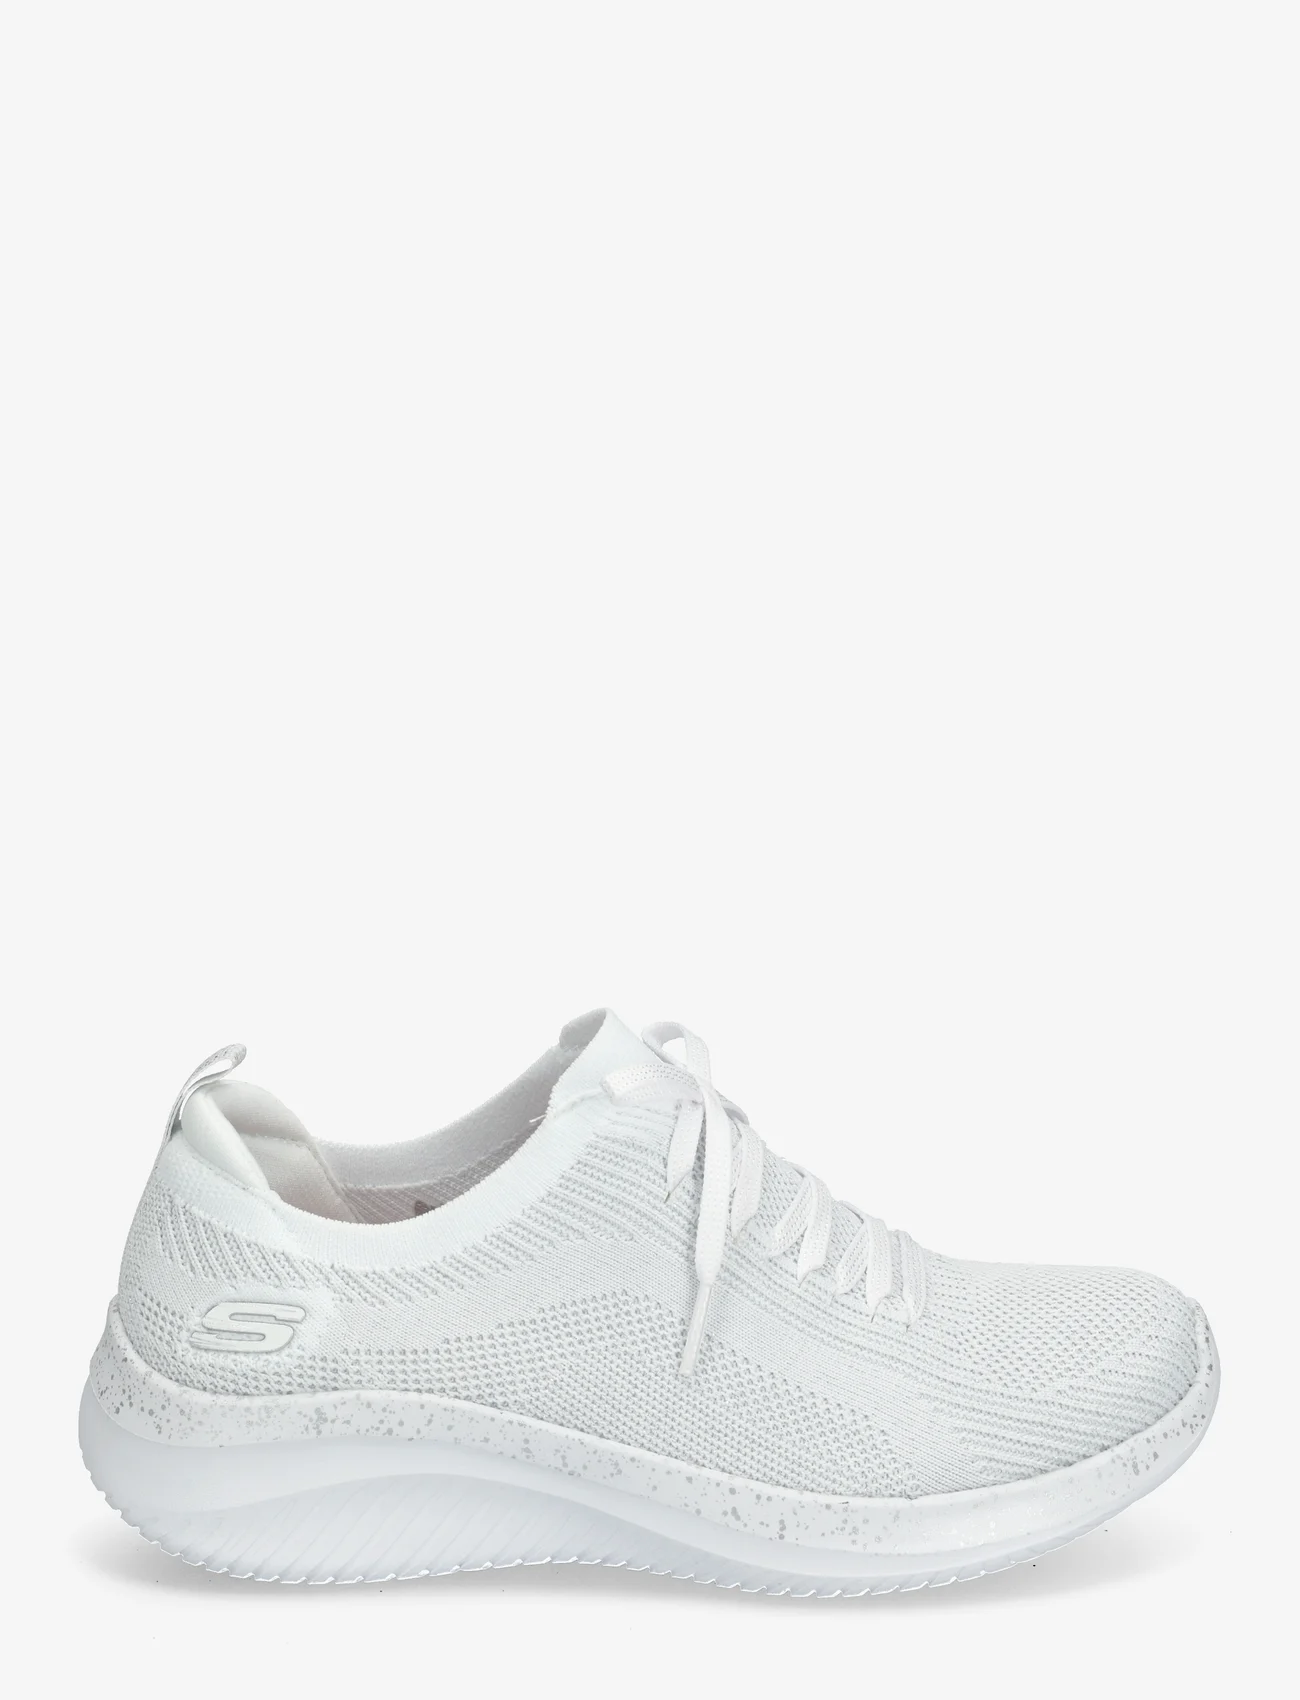 Skechers - Womens Ultra Flex 3.0 - Lets Dance - low top sneakers - wsl white silver - 1